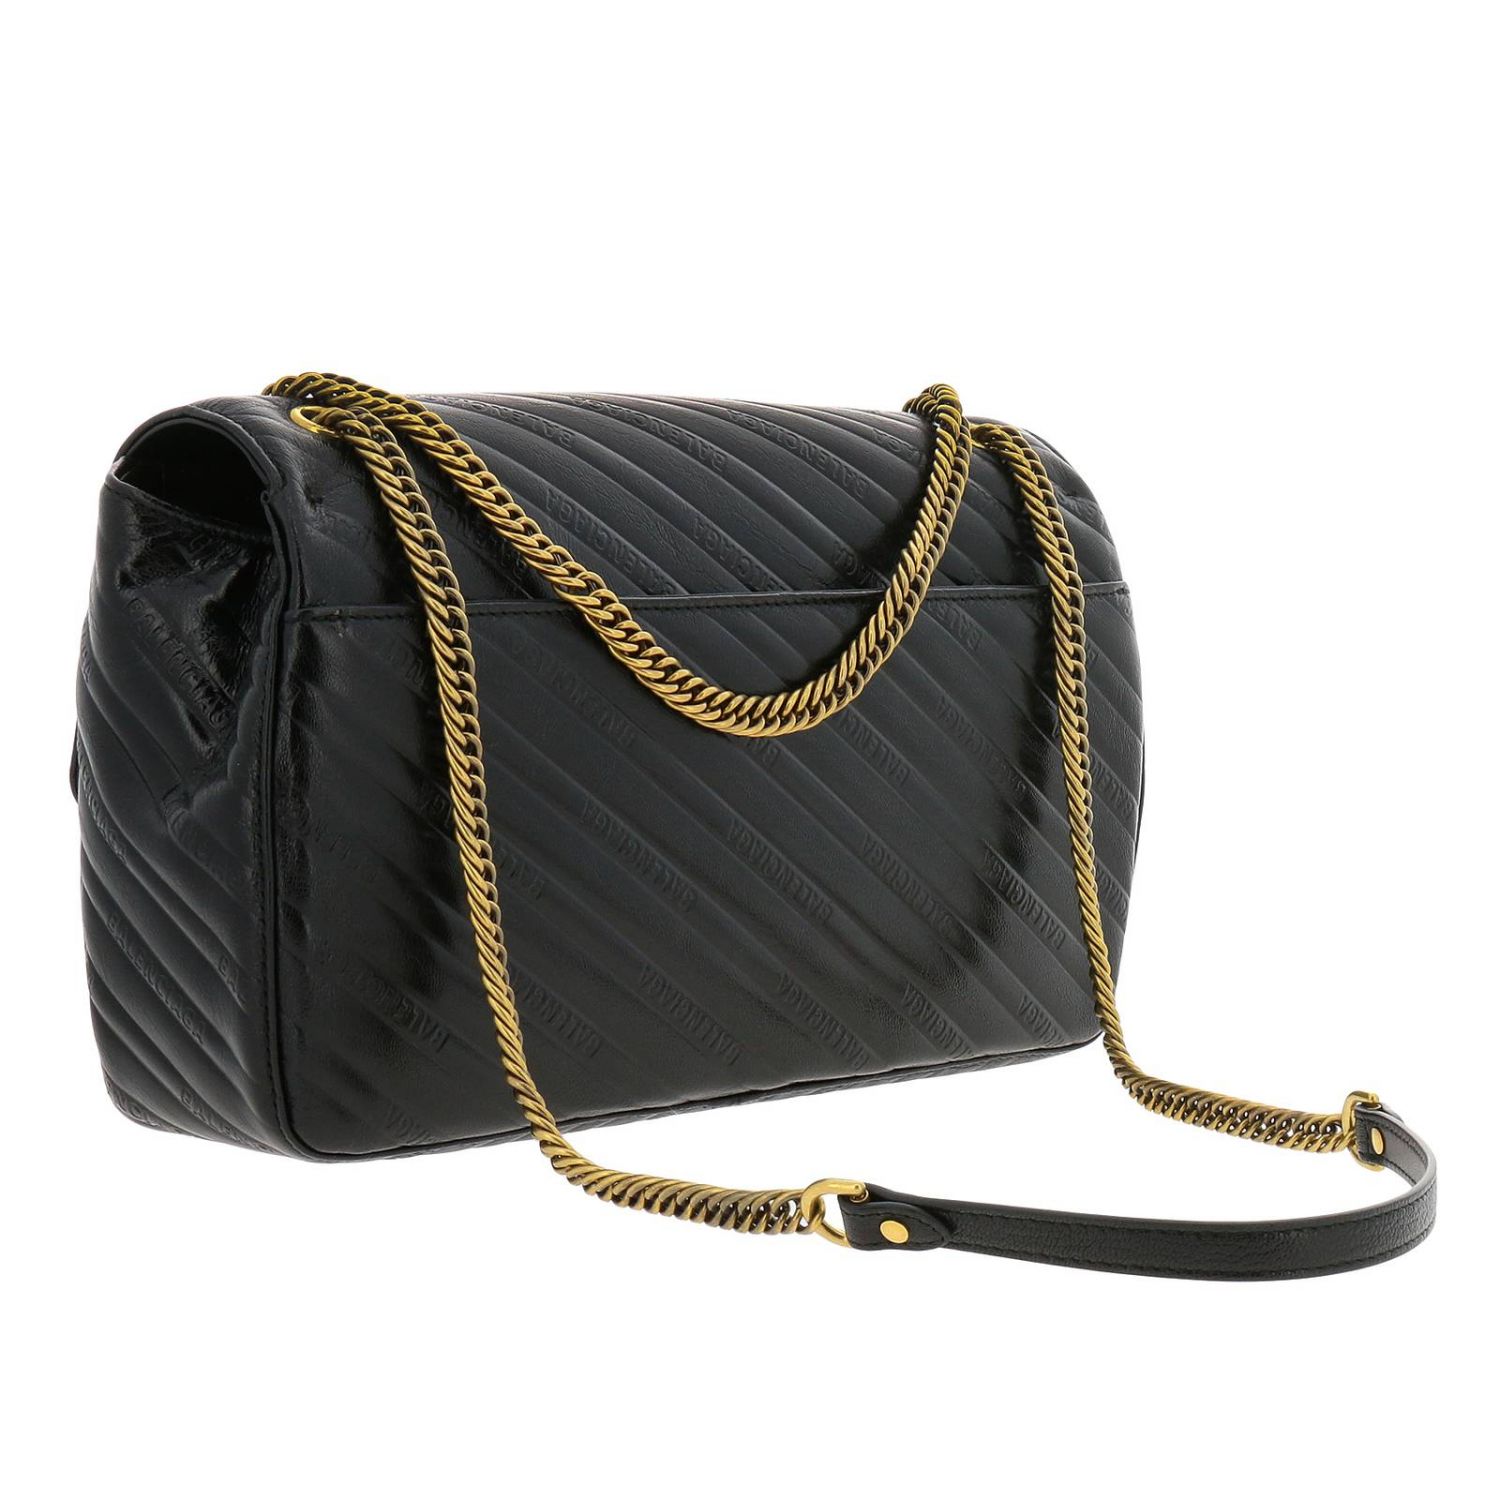 Balenciaga Outlet: crossbody bags for woman - Black | Balenciaga ...